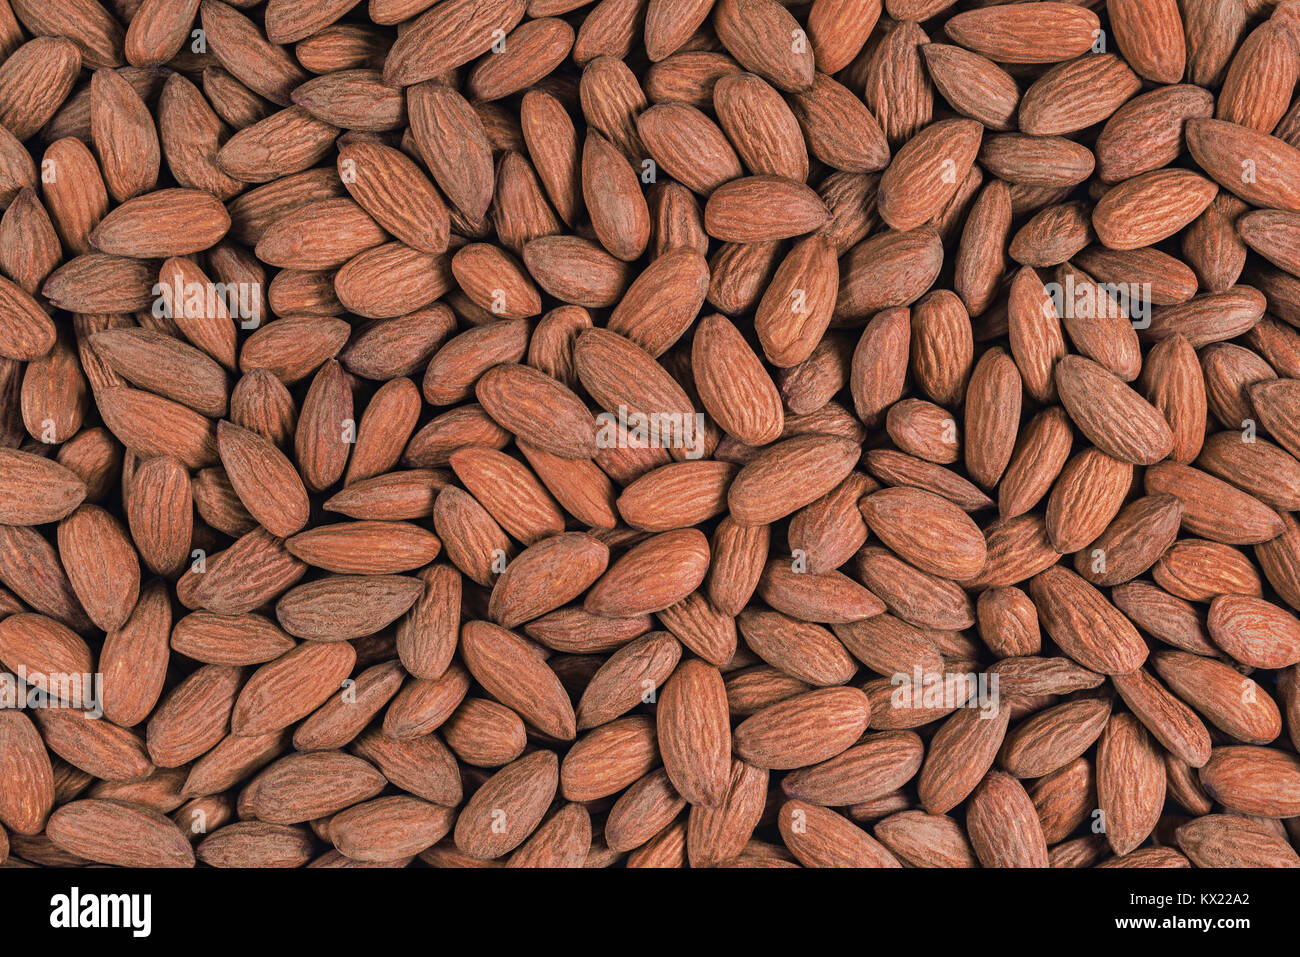 Almonds, full frame. Stock Photo